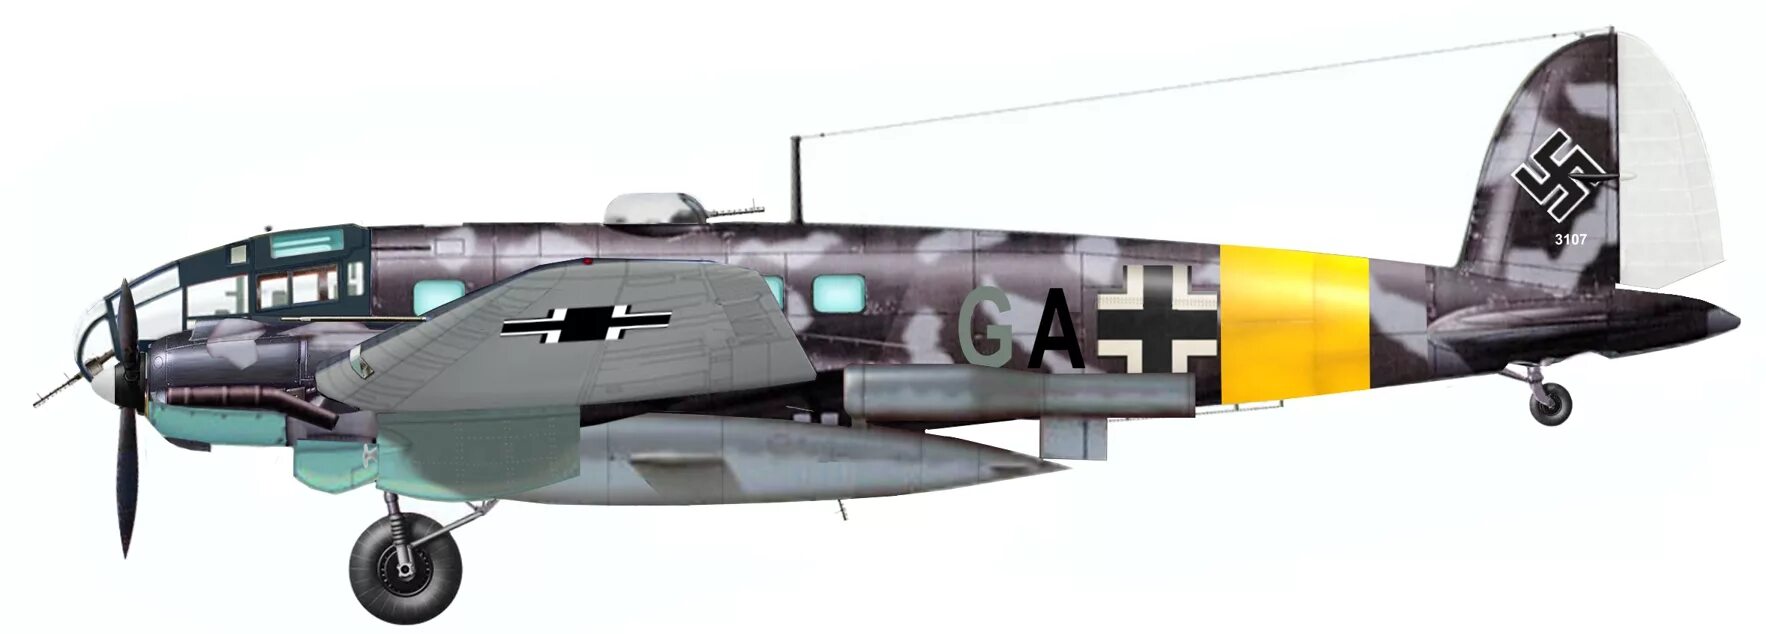 V 1 3 a h. He 111 h-22. Хейнкель Хе 111. He 111h-3. Heinkel he 111 h-22.